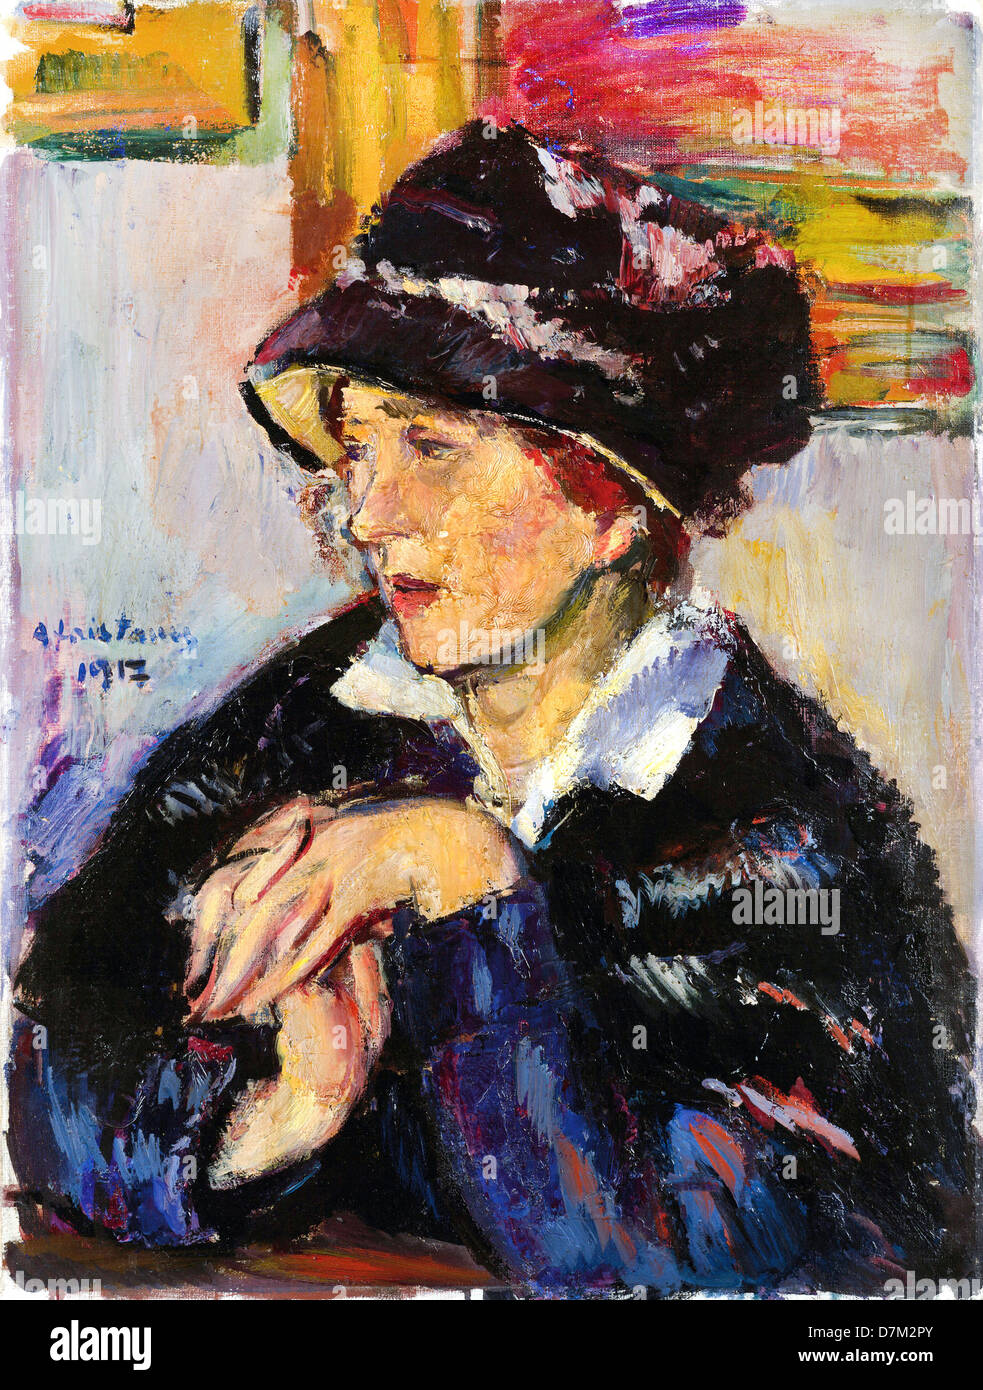 Anton Faistauer, femme avec un chapeau foncé 1917 Huile sur toile. Leopold Museum, Vienne, Autriche Banque D'Images